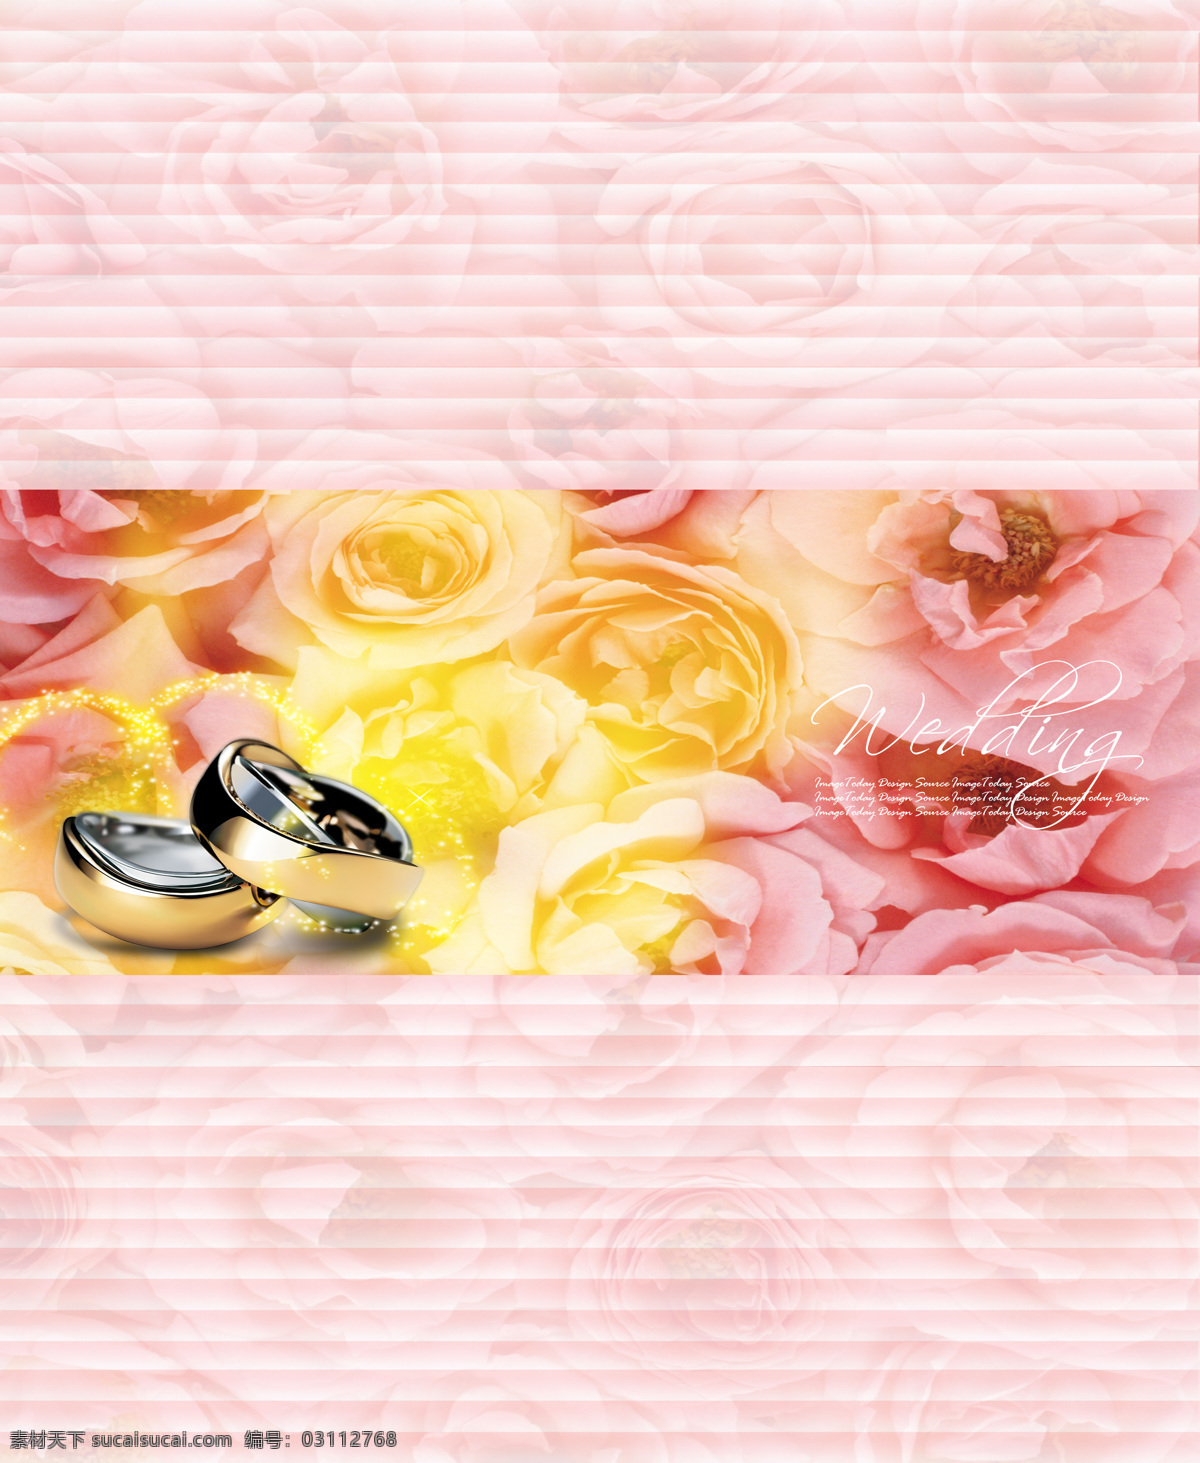 百叶窗 样式 底纹边框 粉色 花形 戒指 牡丹 移门 移门图案 百叶窗样式 窗花形 富贵花形 家居装饰素材